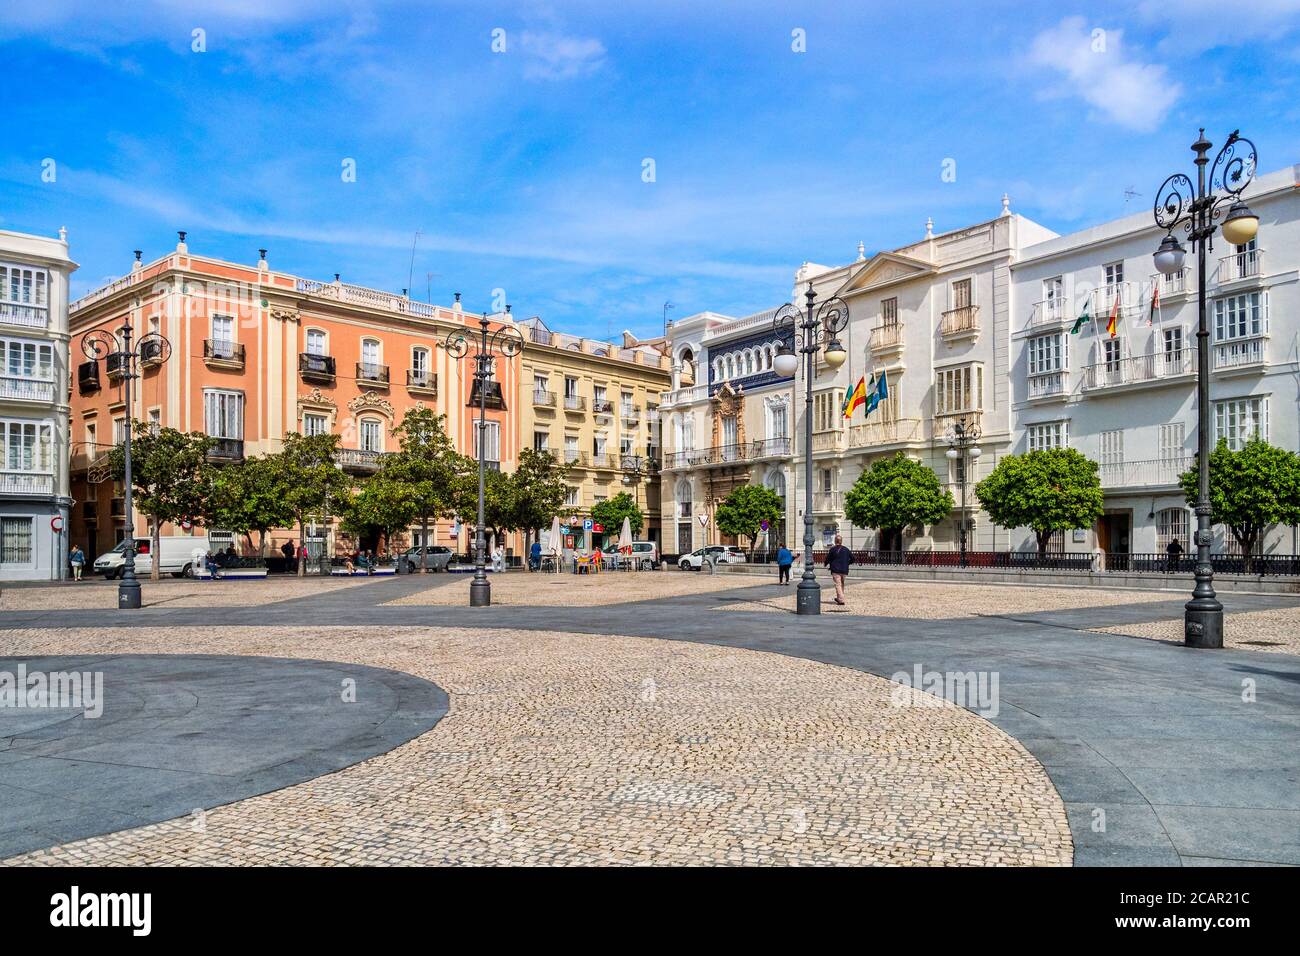 12 mars 2020: Cadix, Espagne - la Plaza de San Antonio et ses bâtiments environnants au soleil de printemps, Cadix. Banque D'Images